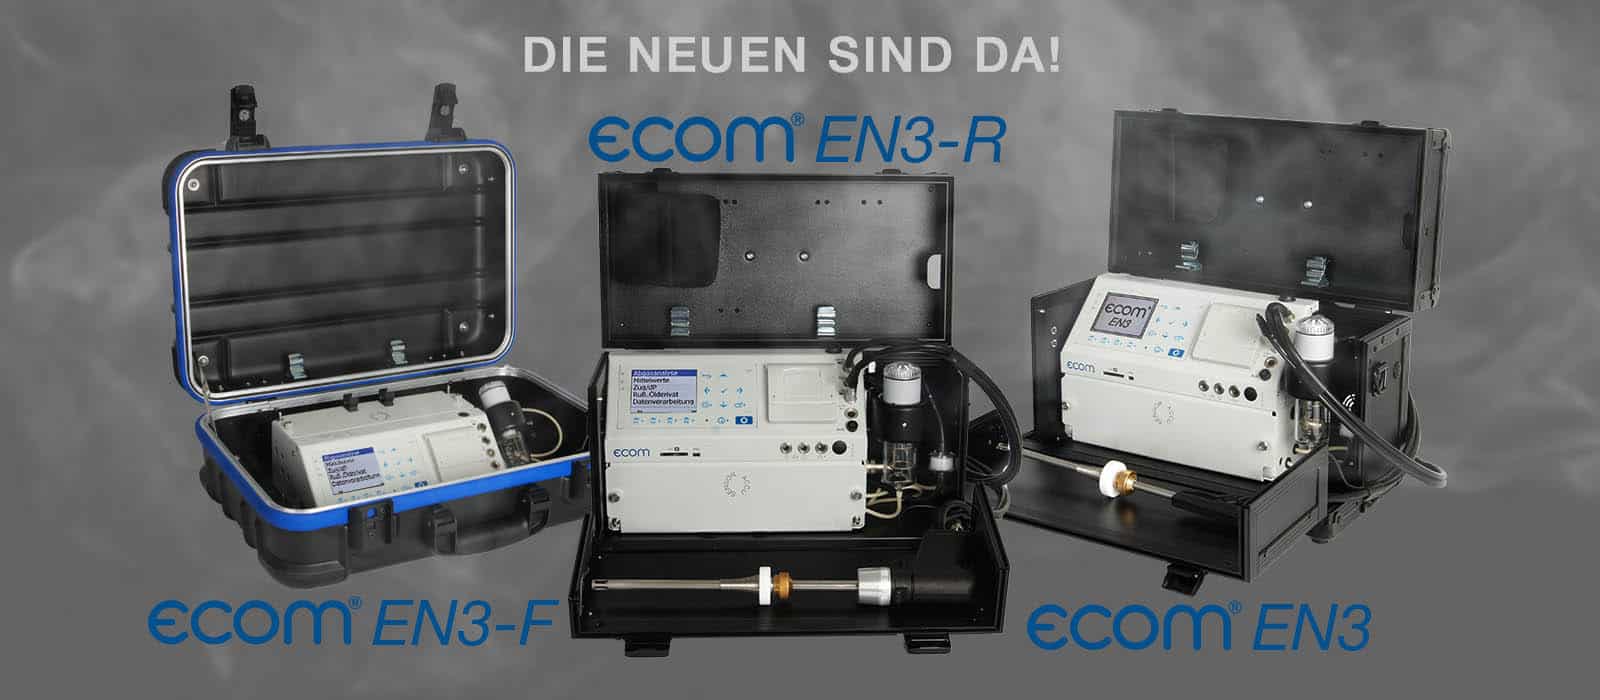 ecom: hochwertige Messgeräte für Abgasanalyse, Druckmessung & mehr!